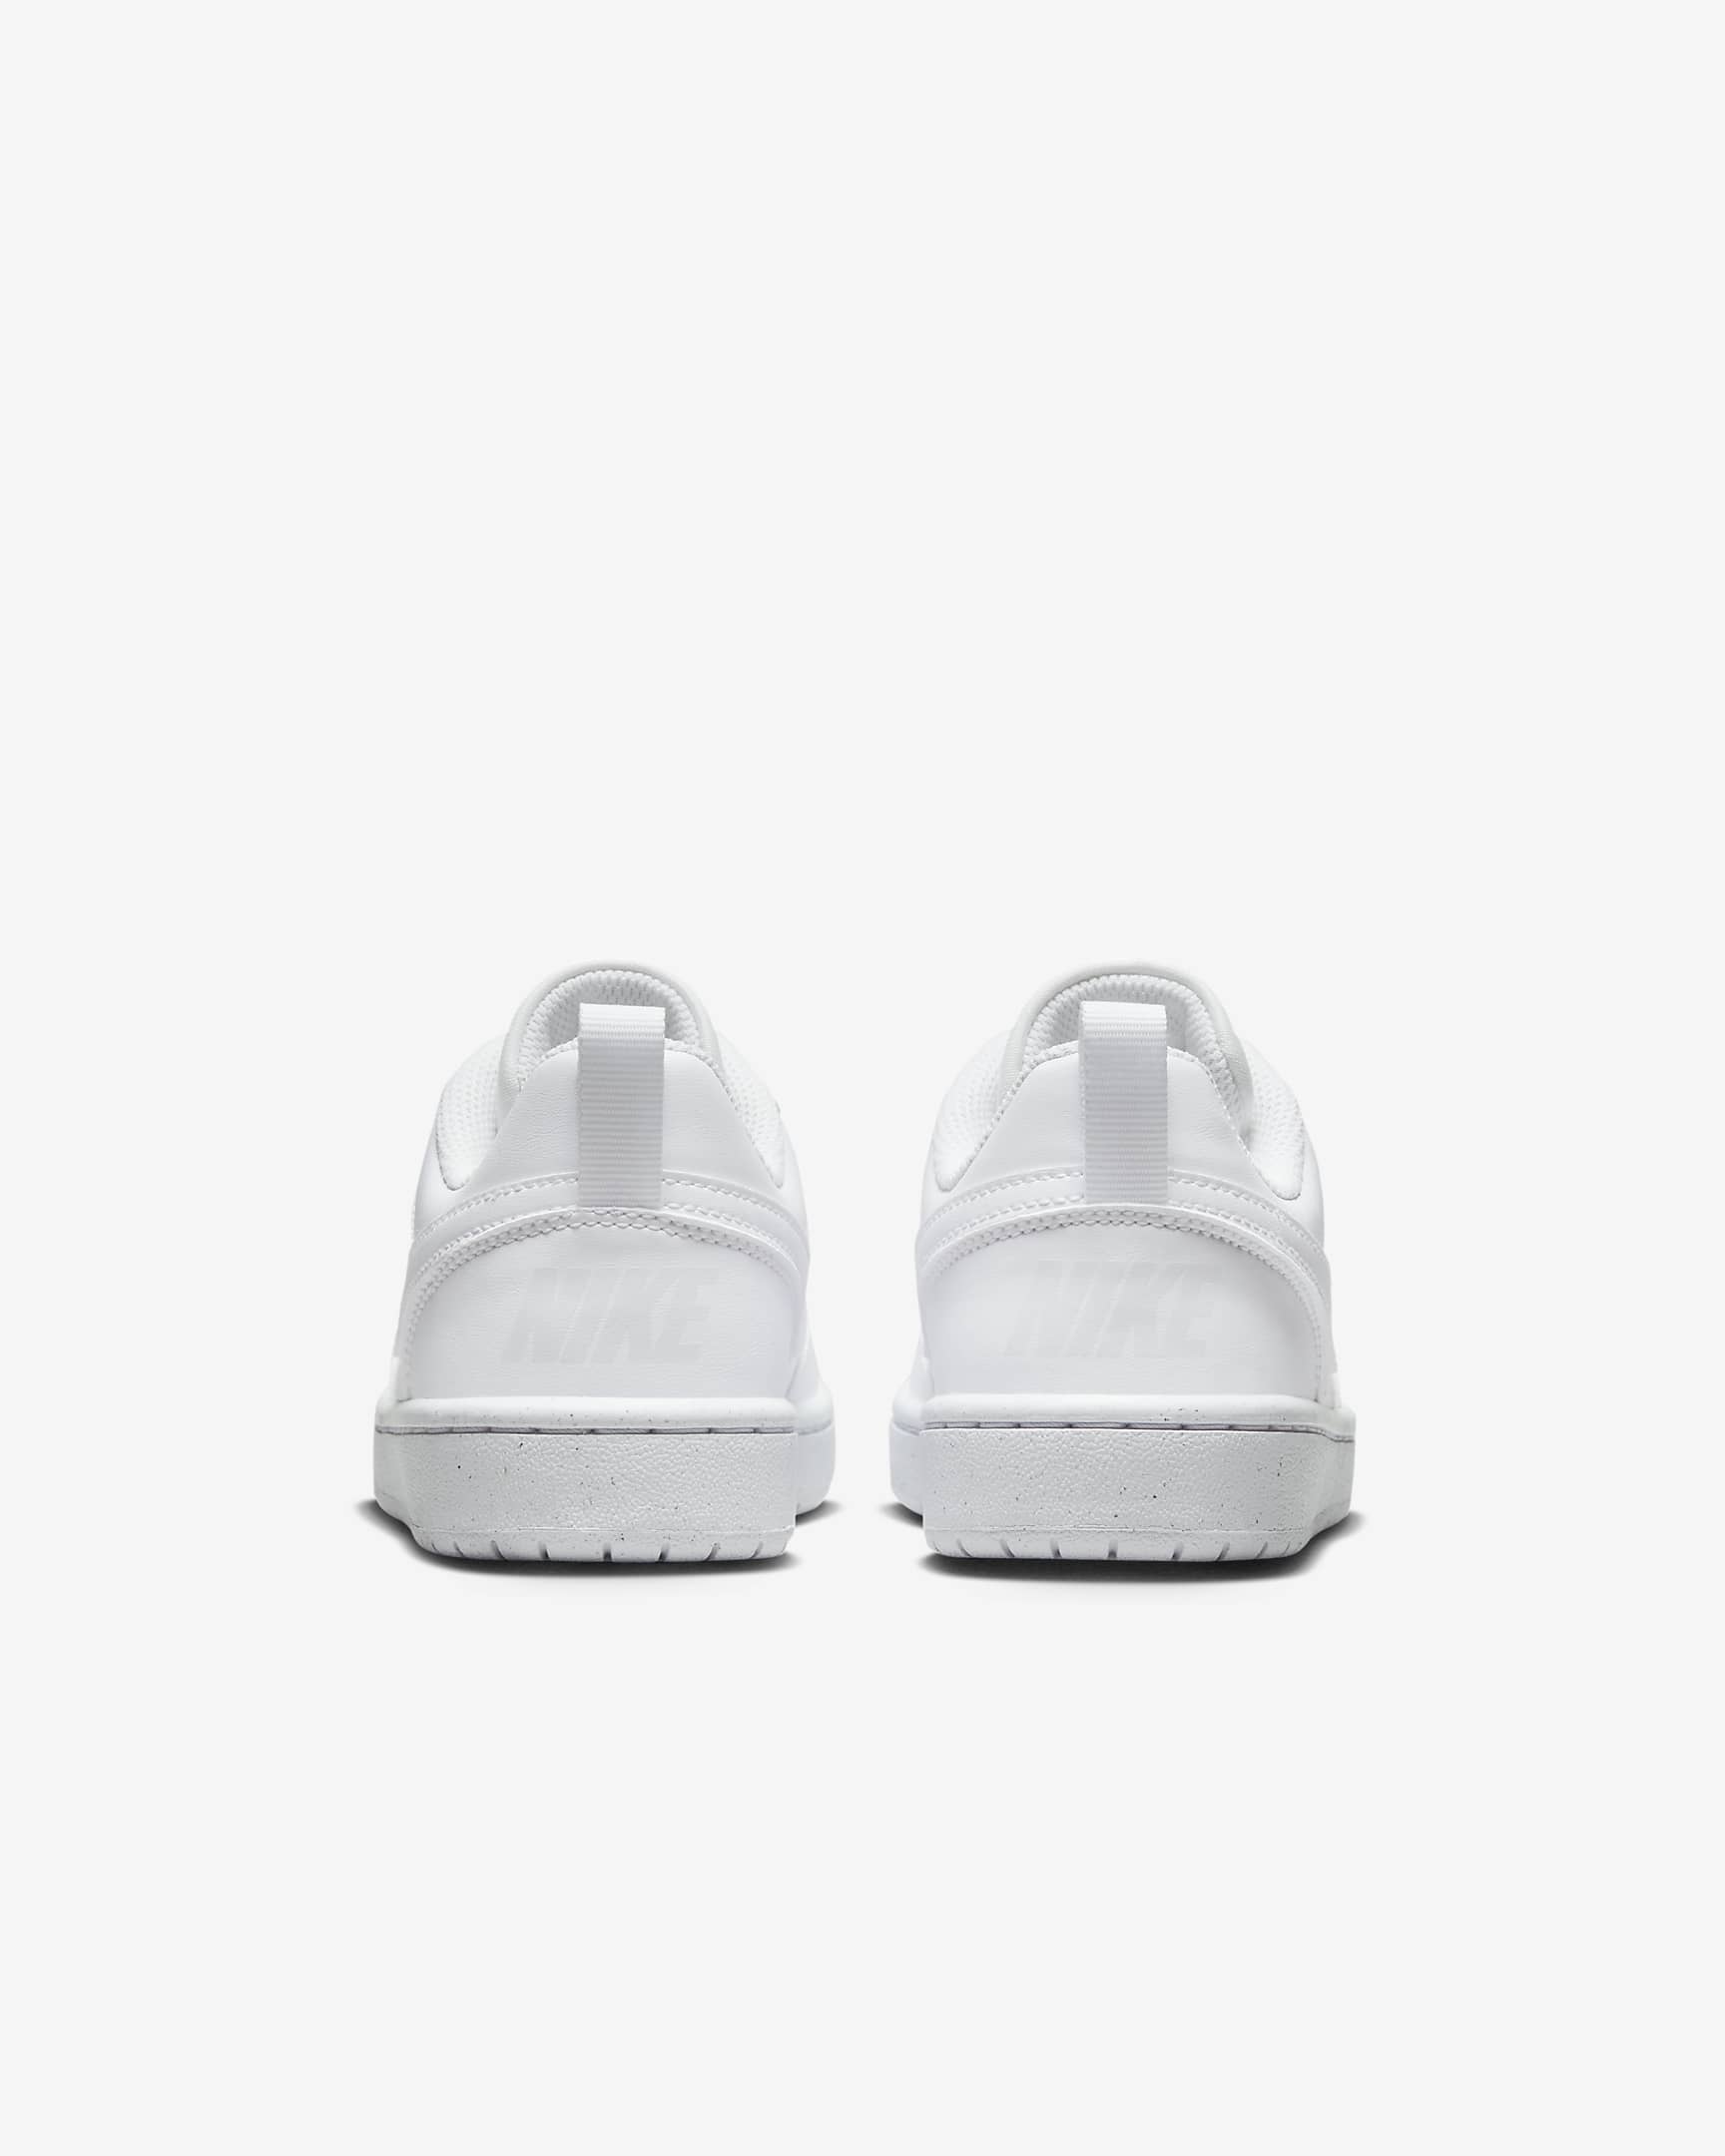 Nike Court Borough Low Recraft Older Kids' Shoes - White/White/White